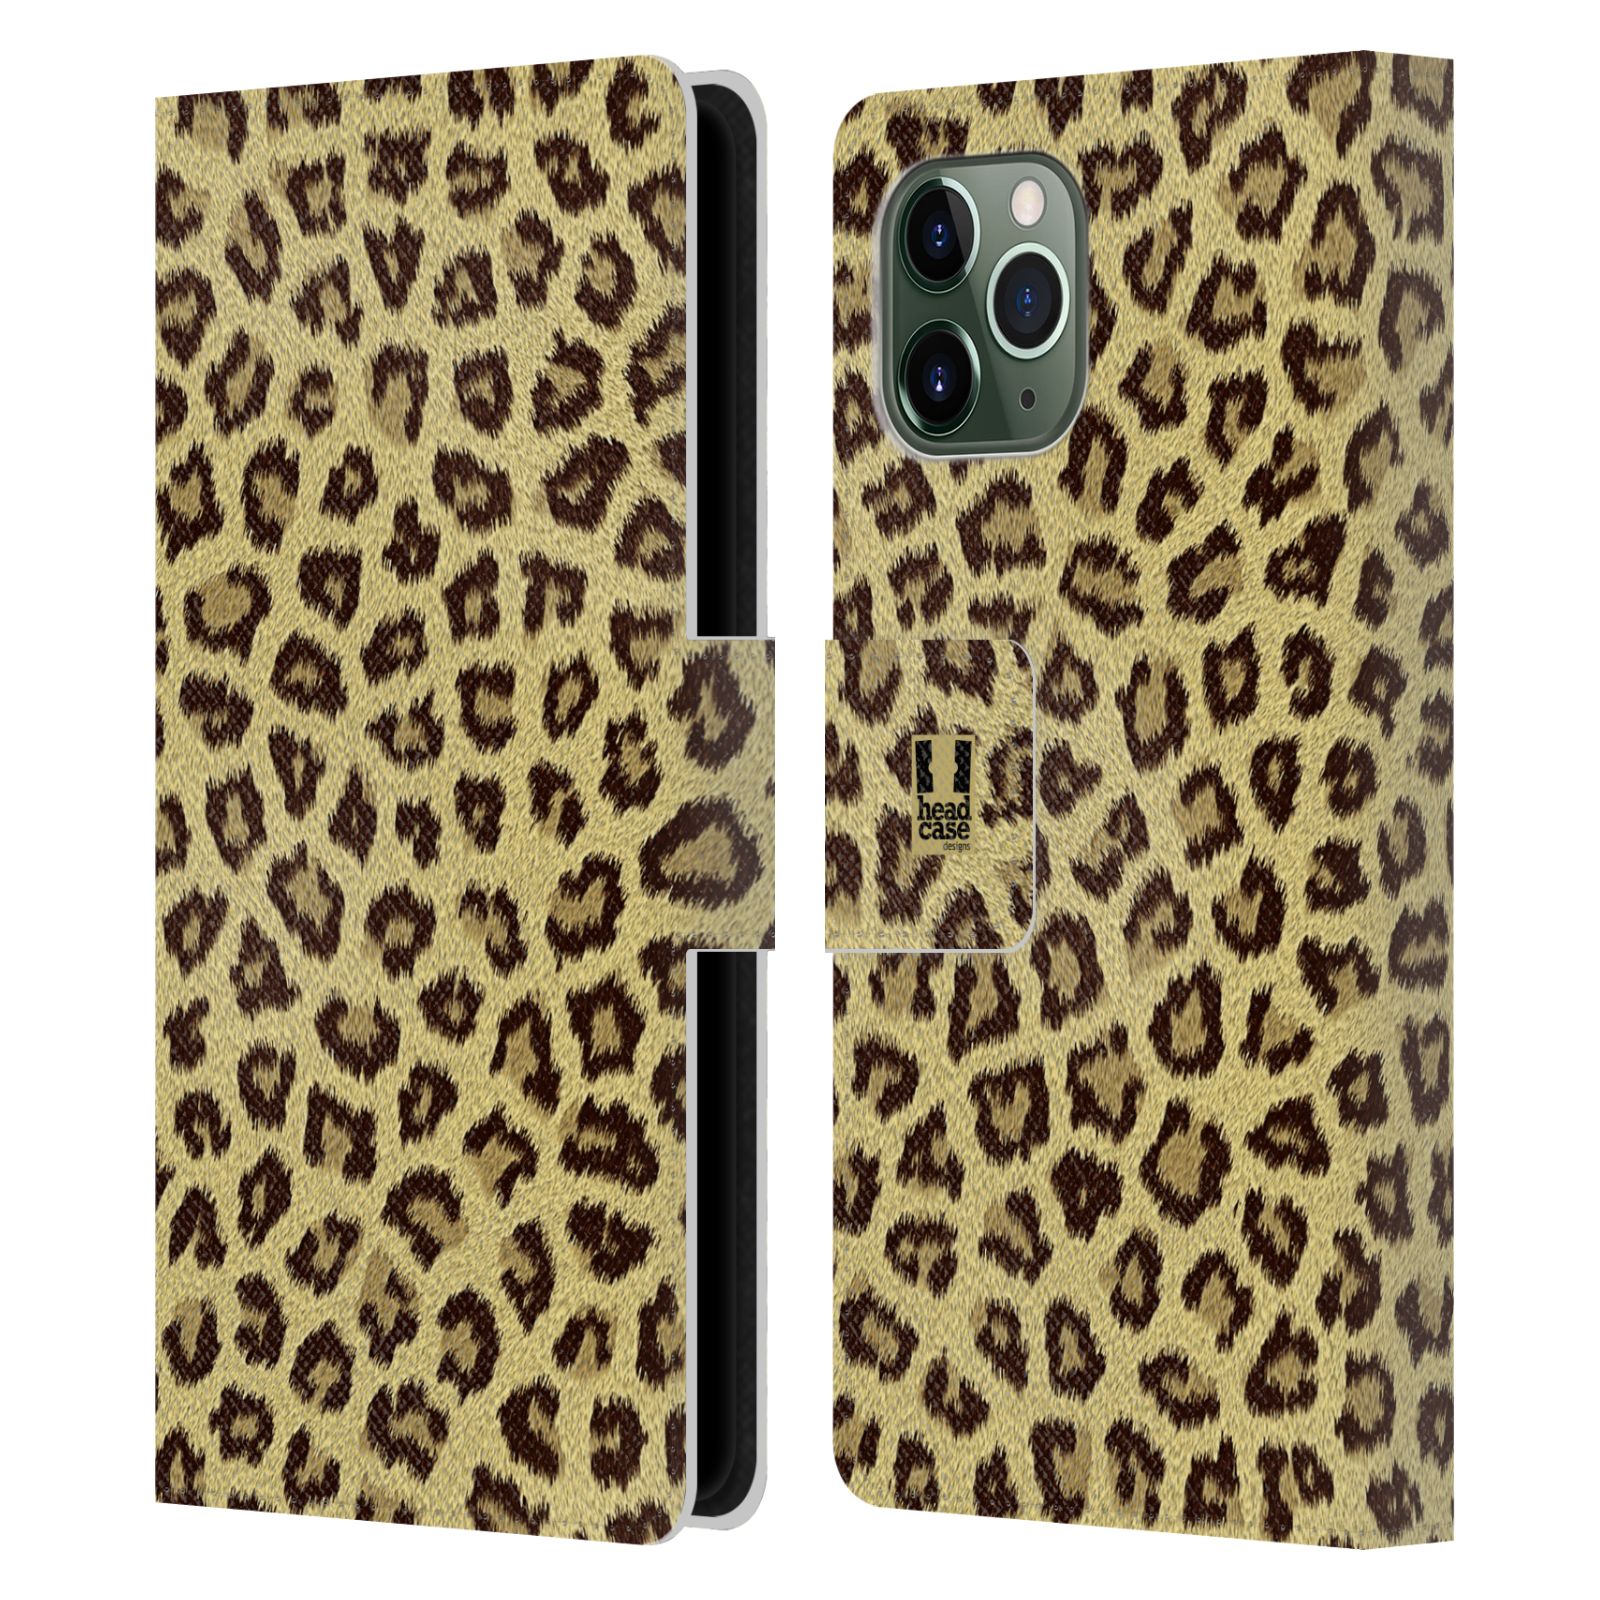 Pouzdro na mobil Apple Iphone 11 PRO zvíře srst divoká kolekce jaguár, gepard